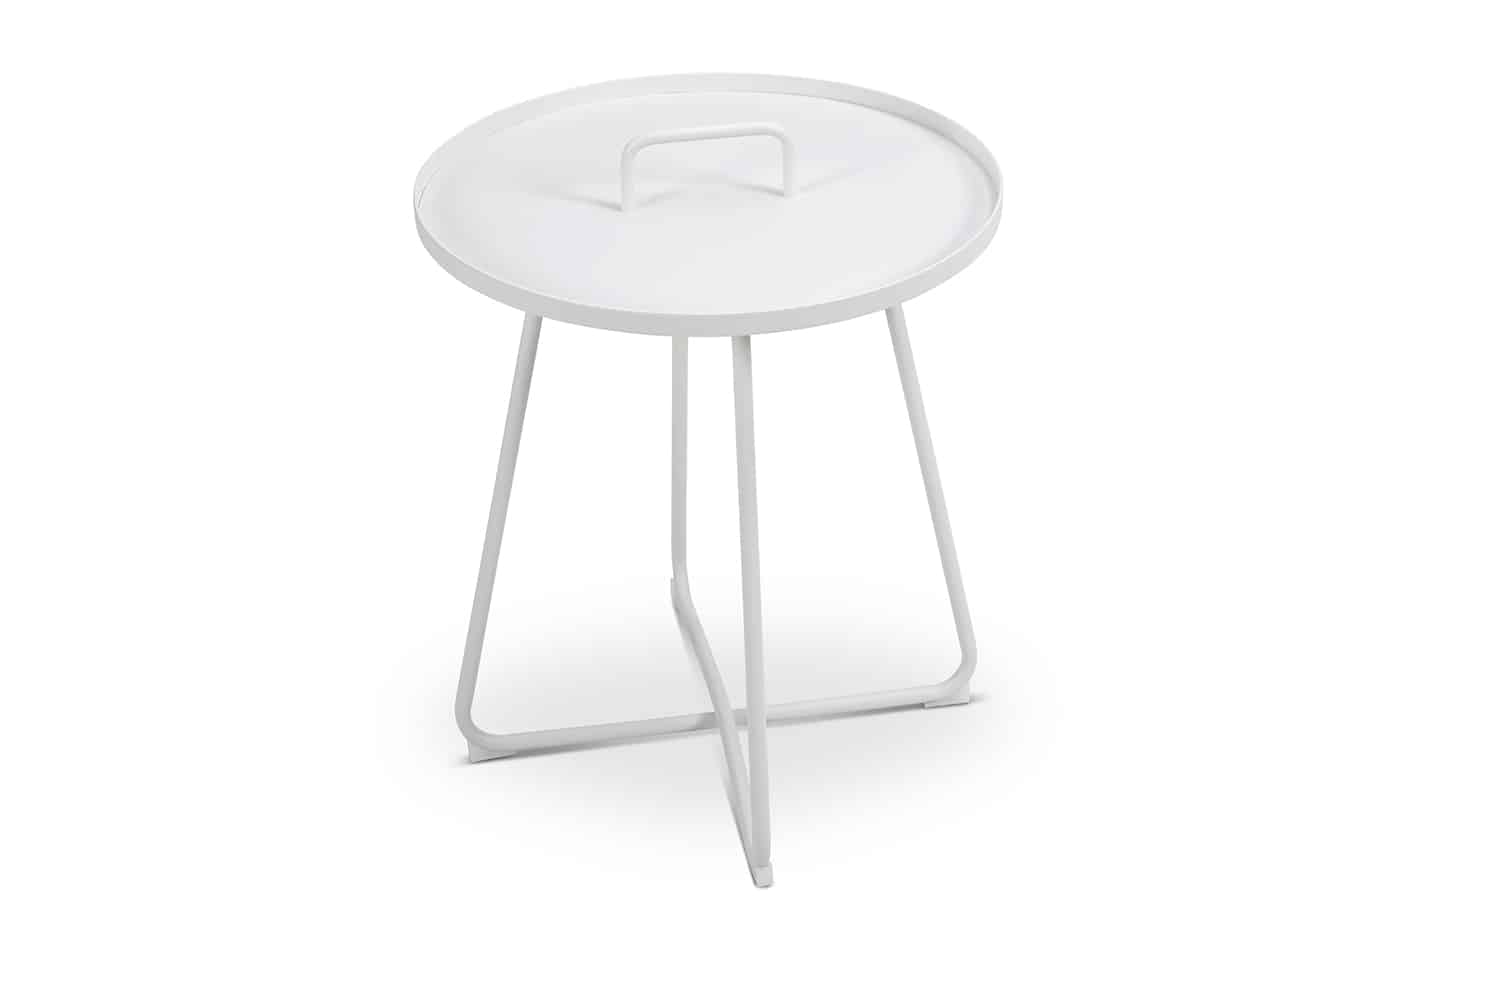 שולחן צד - שולחן קפה דגם נטלי לגינה ולמרפסת בצבע לבן